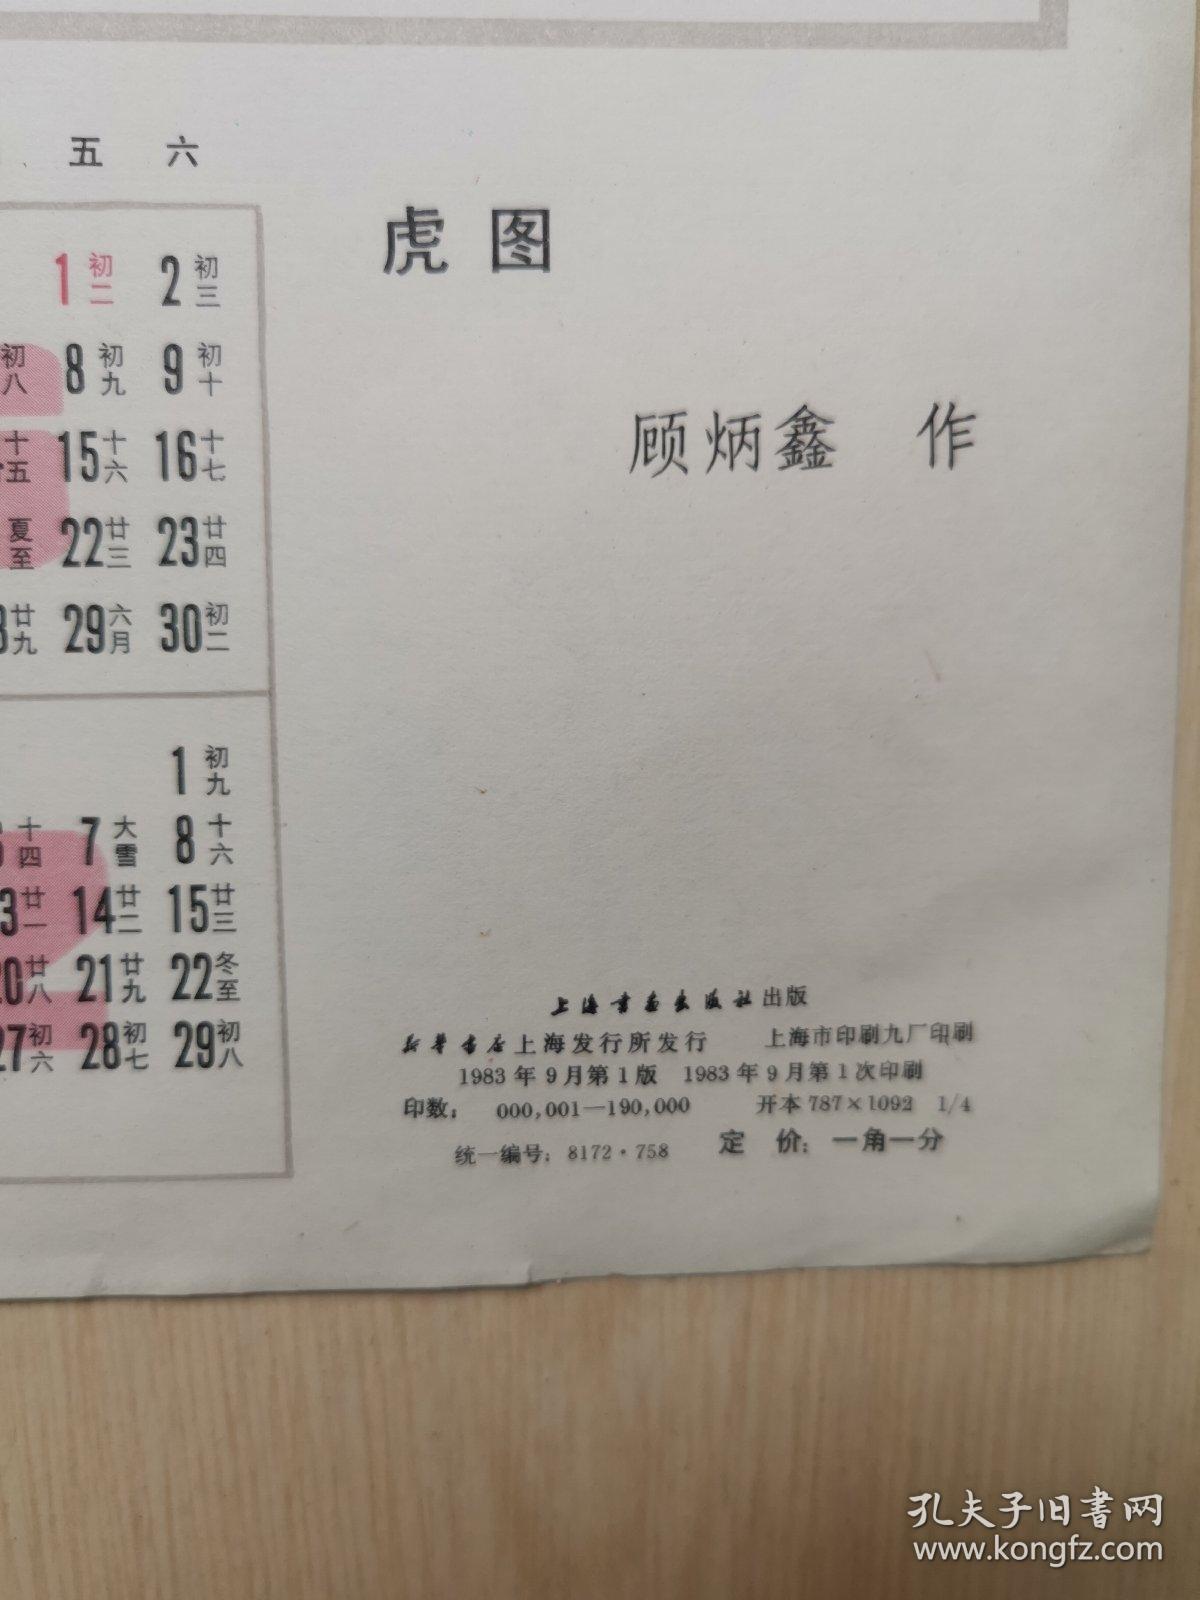 1984  年历画   虎图  顾炳鑫作